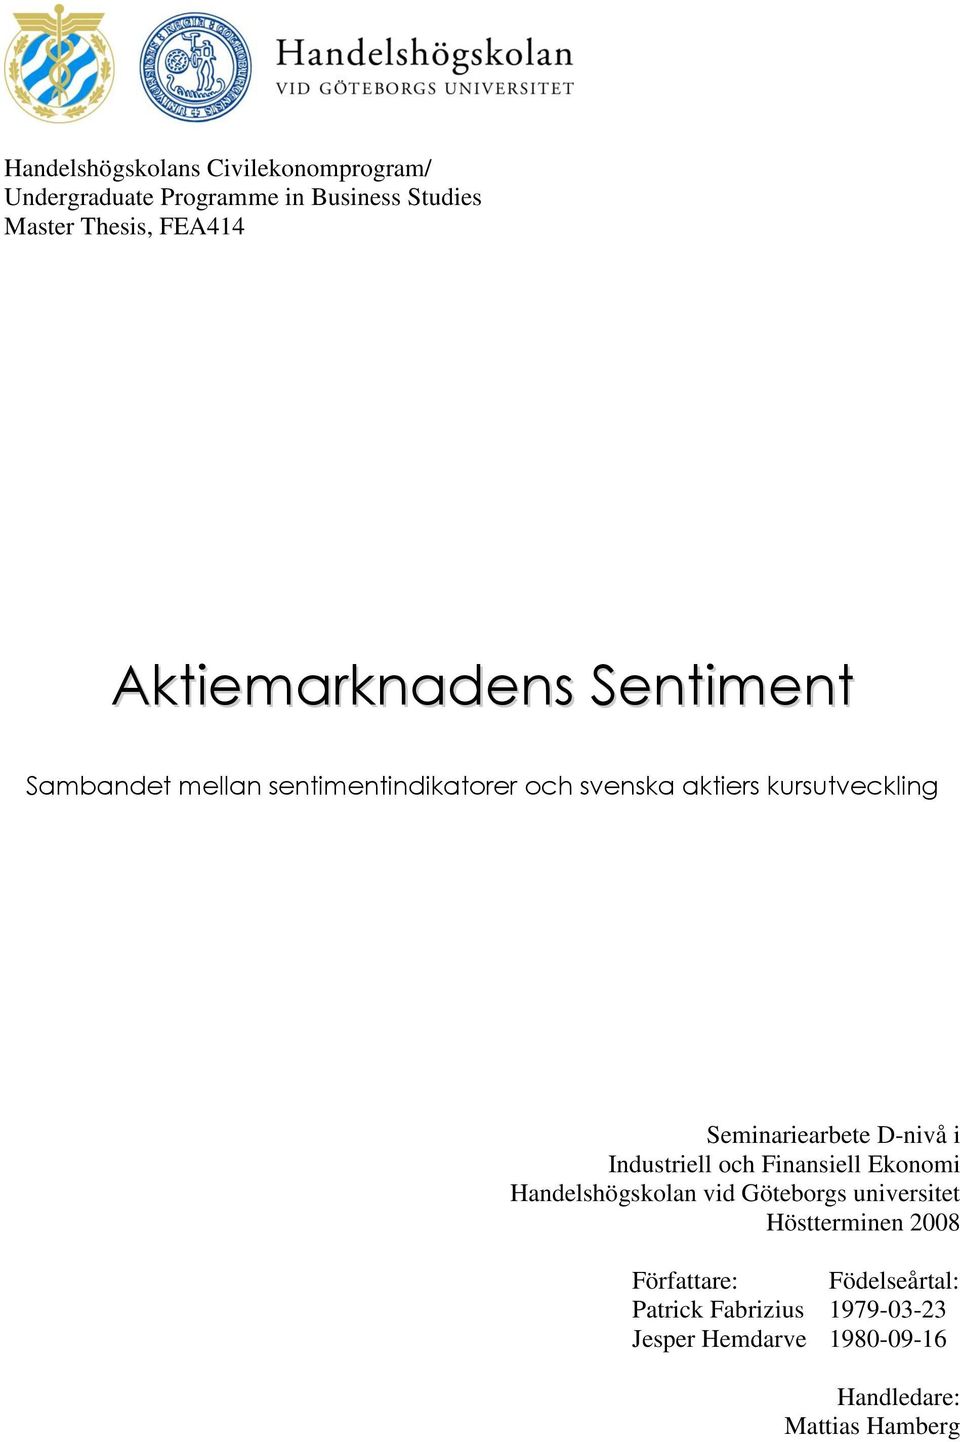 Seminariearbete D-nivå i Industriell och Finansiell Ekonomi Handelshögskolan vid Göteborgs universitet